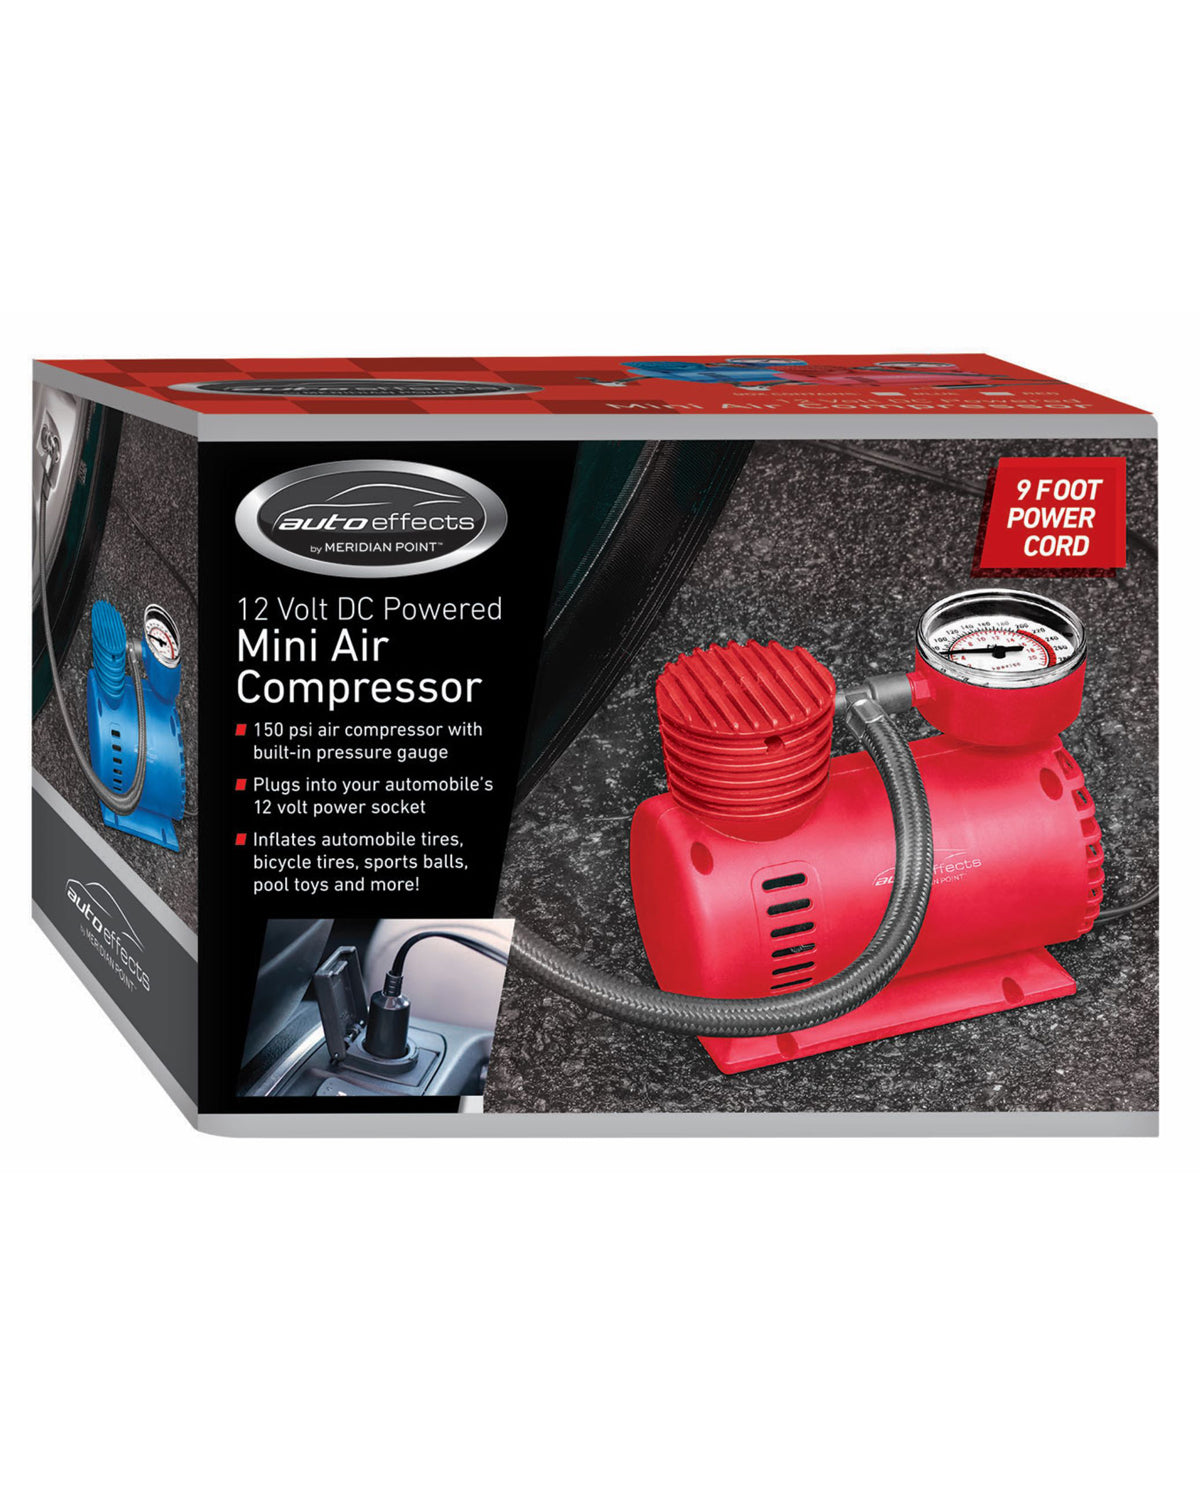 Auto Effects Mini Air Compressor